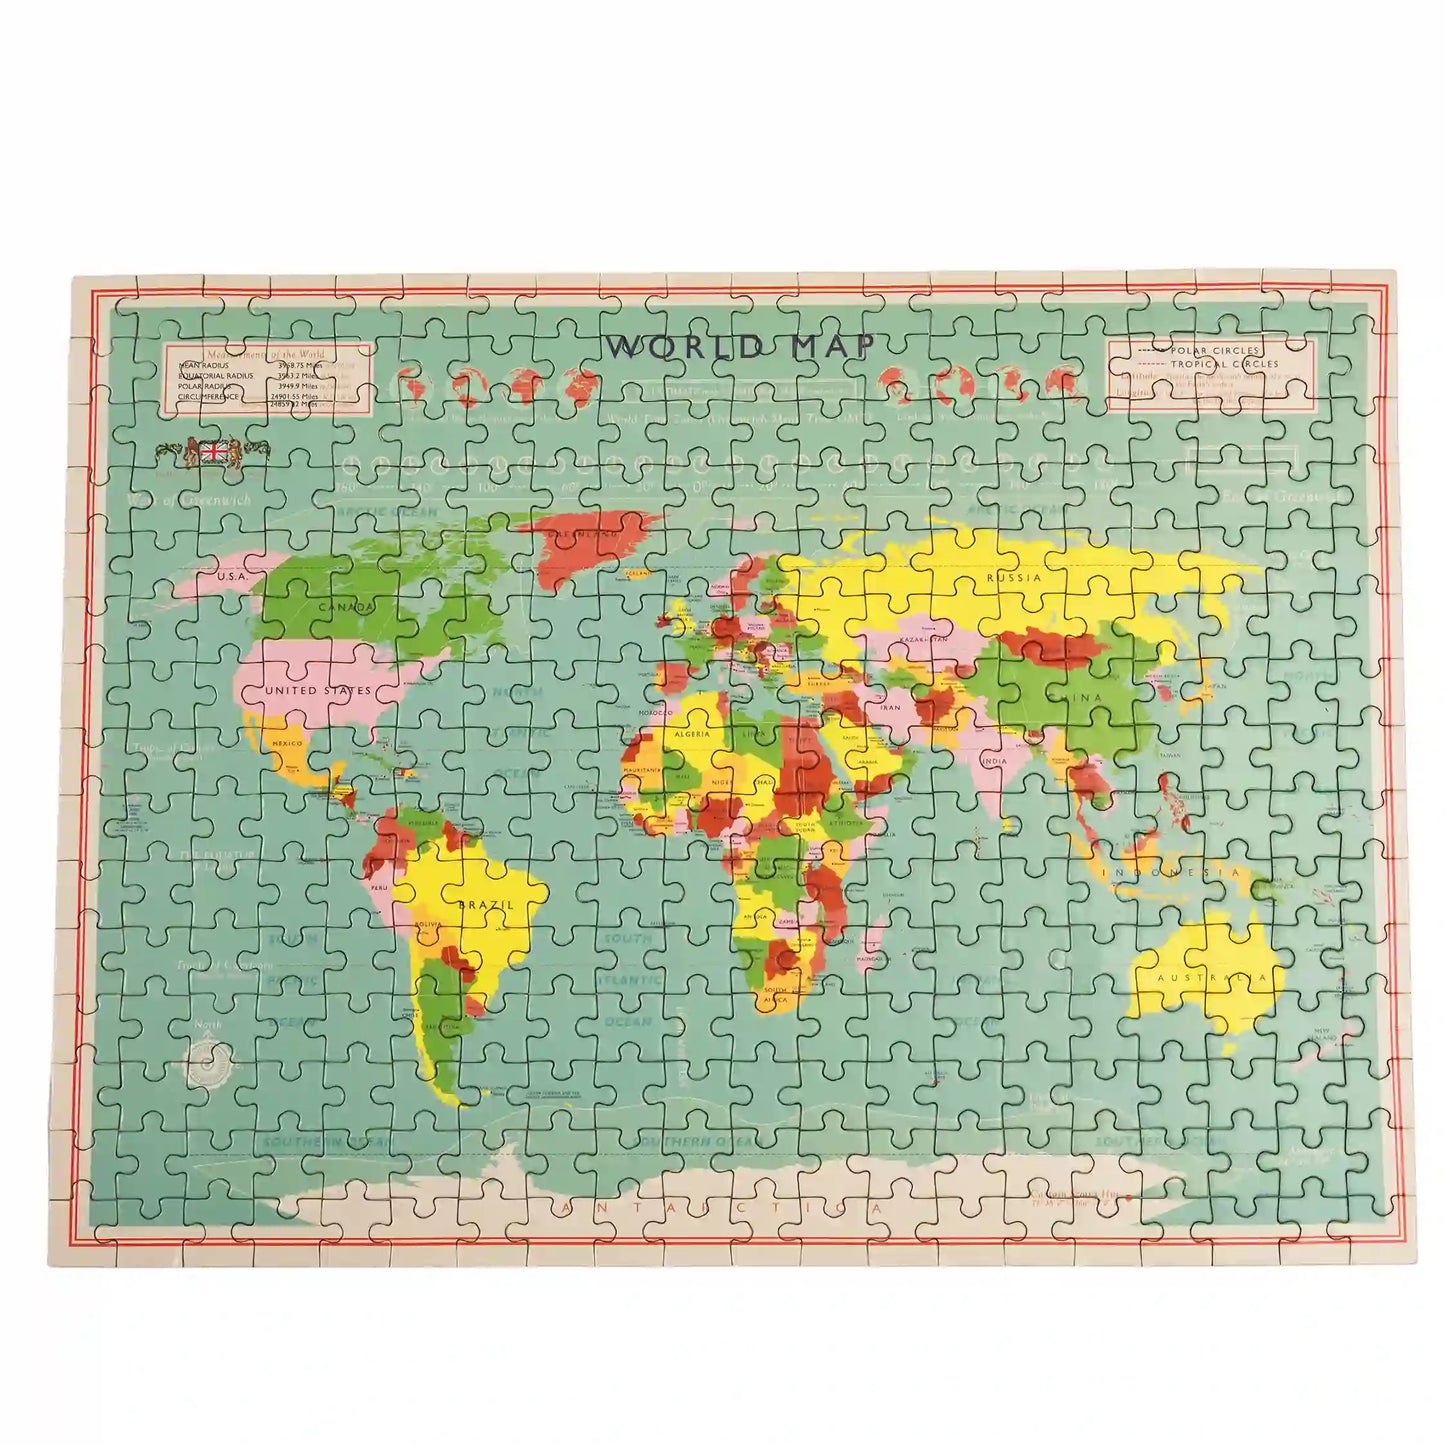 Rex London Map of World Jigsaw - 300 Pieces